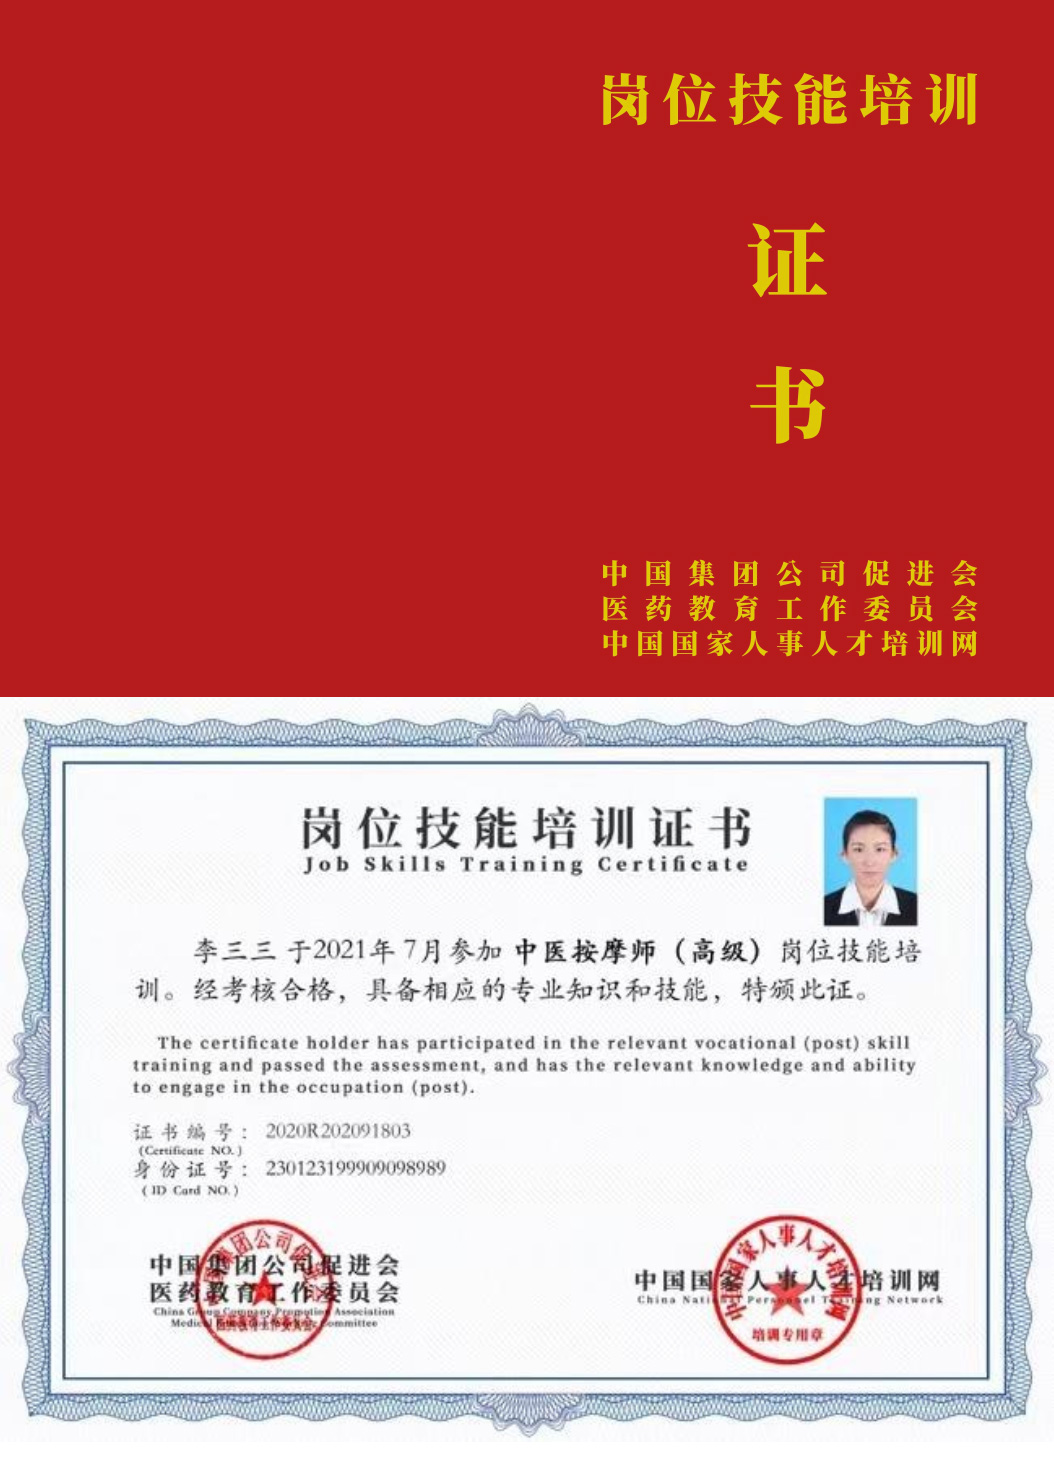 中国国家人事人才培训网 病患照护师 岗位技能培训证书